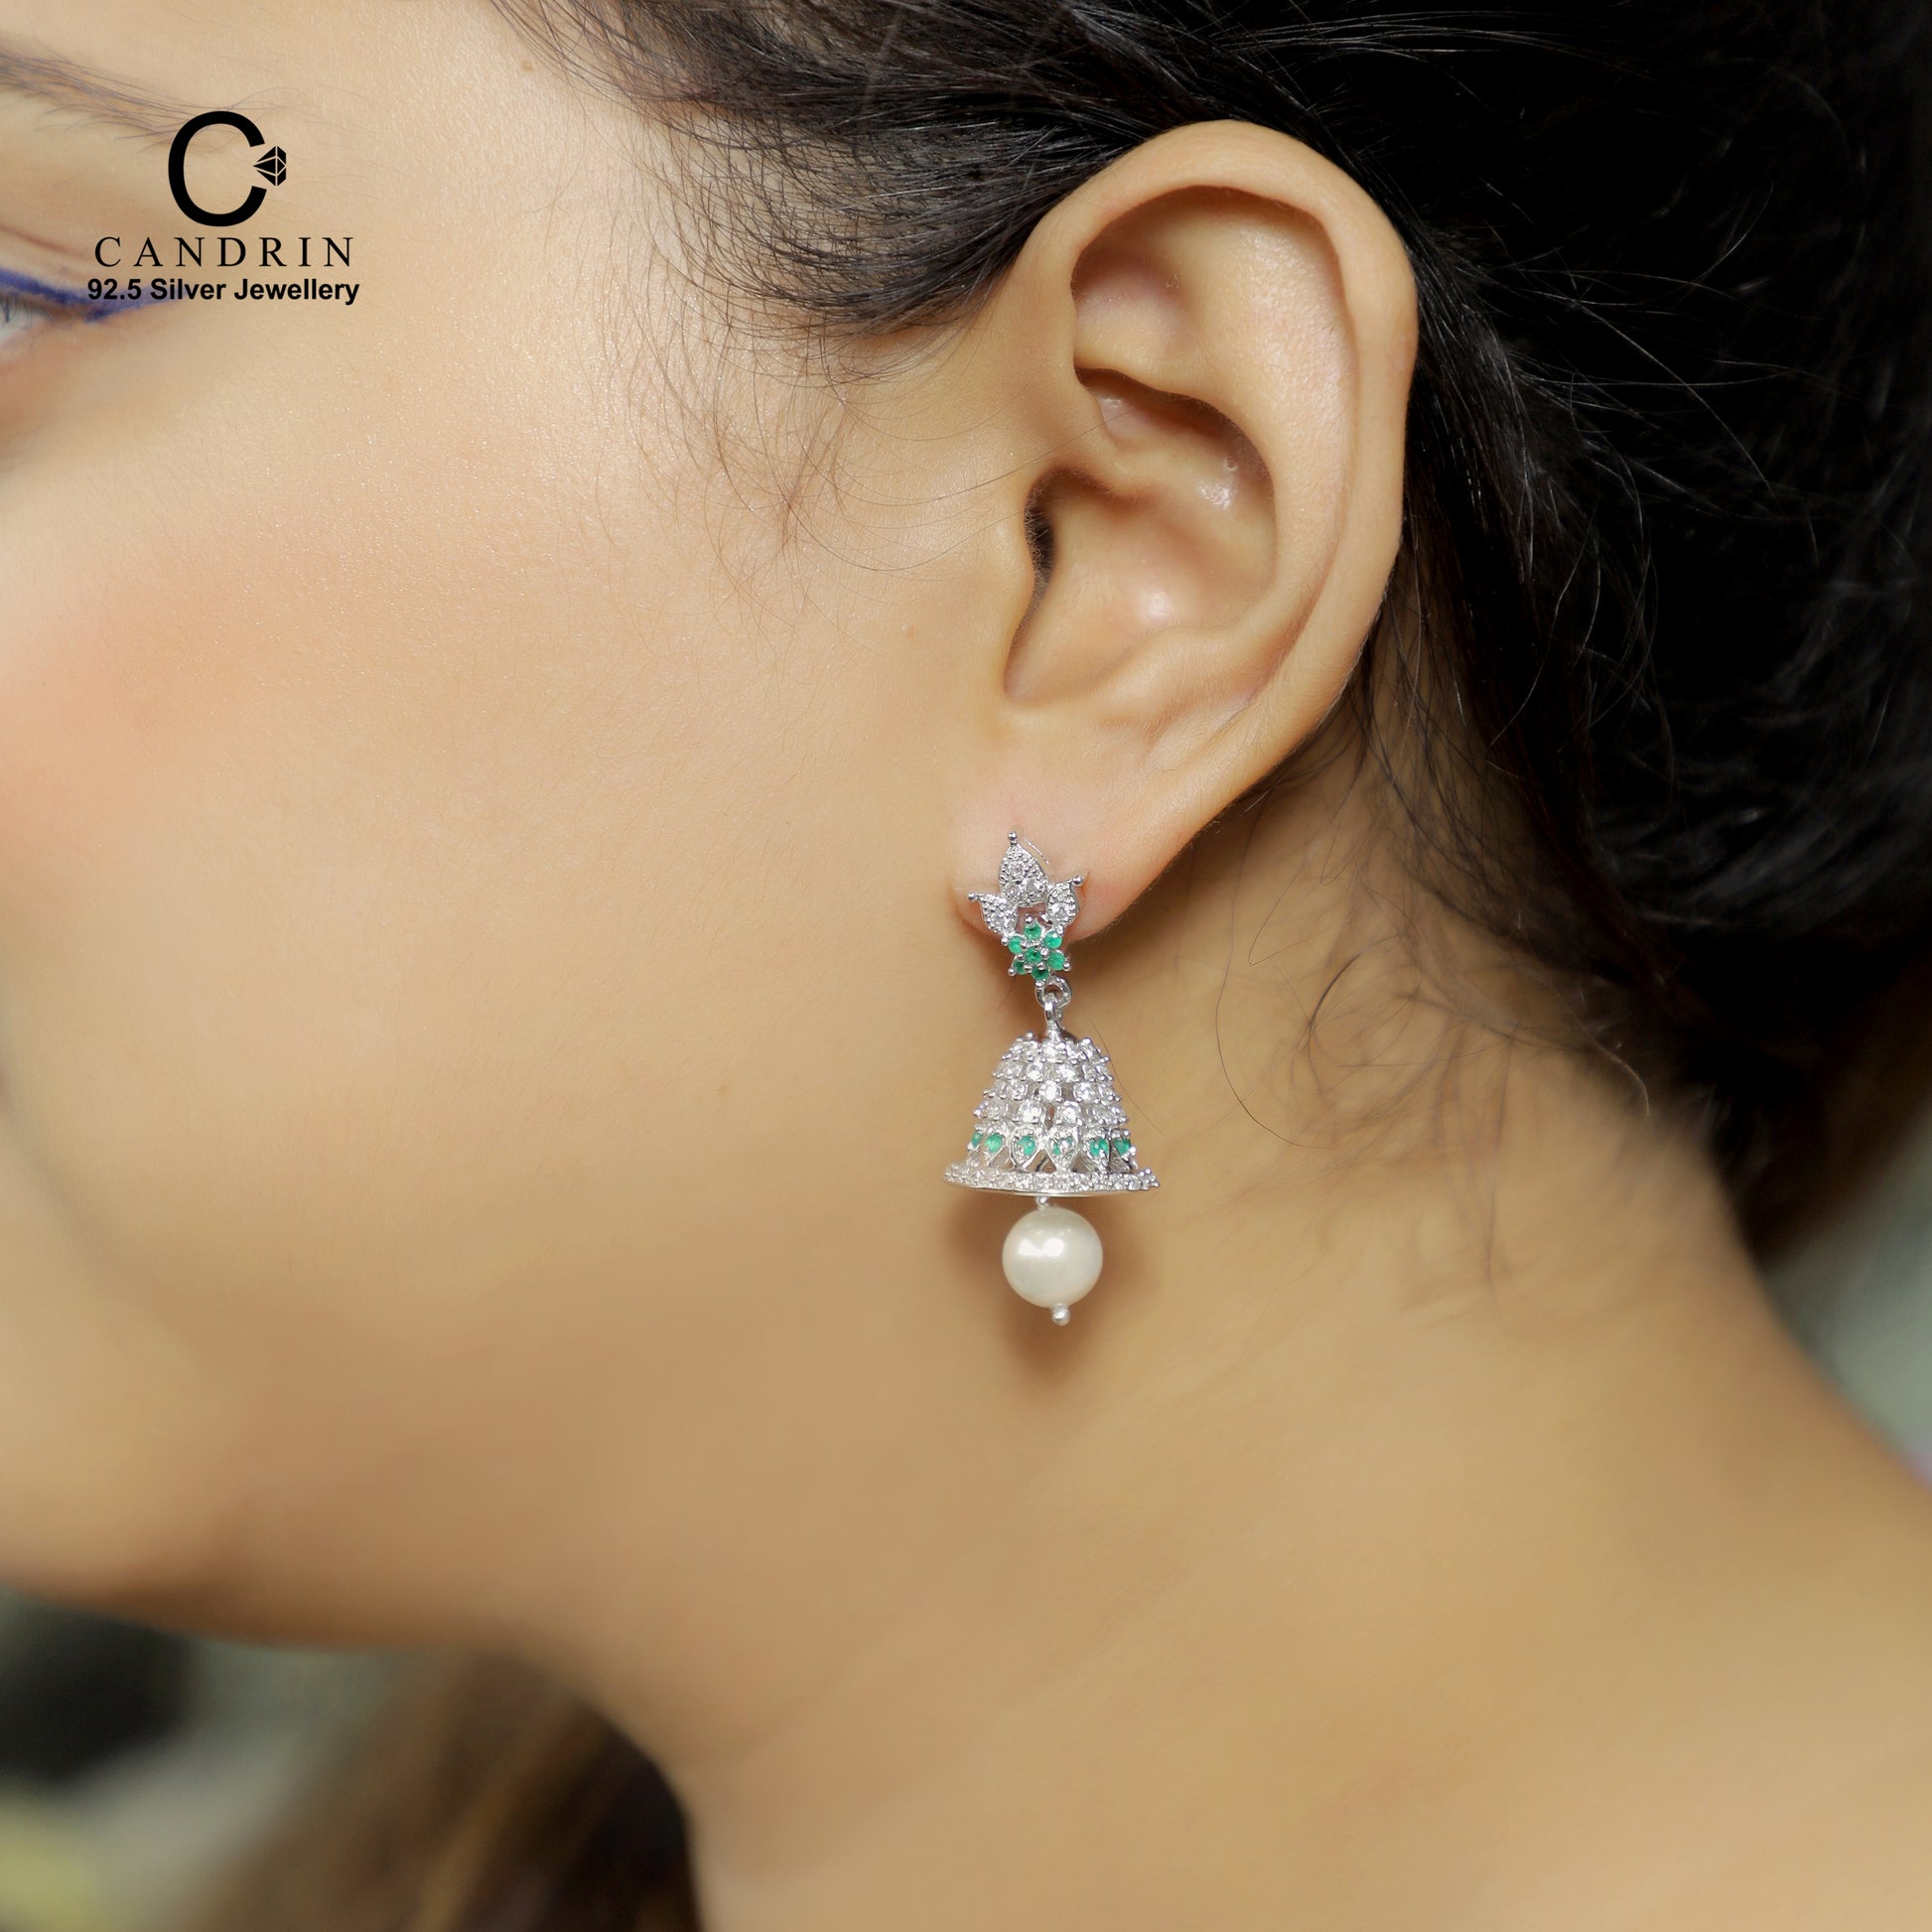 silver wholesale jewellery / little bell earring / 925 silver earring /  white pearl earring